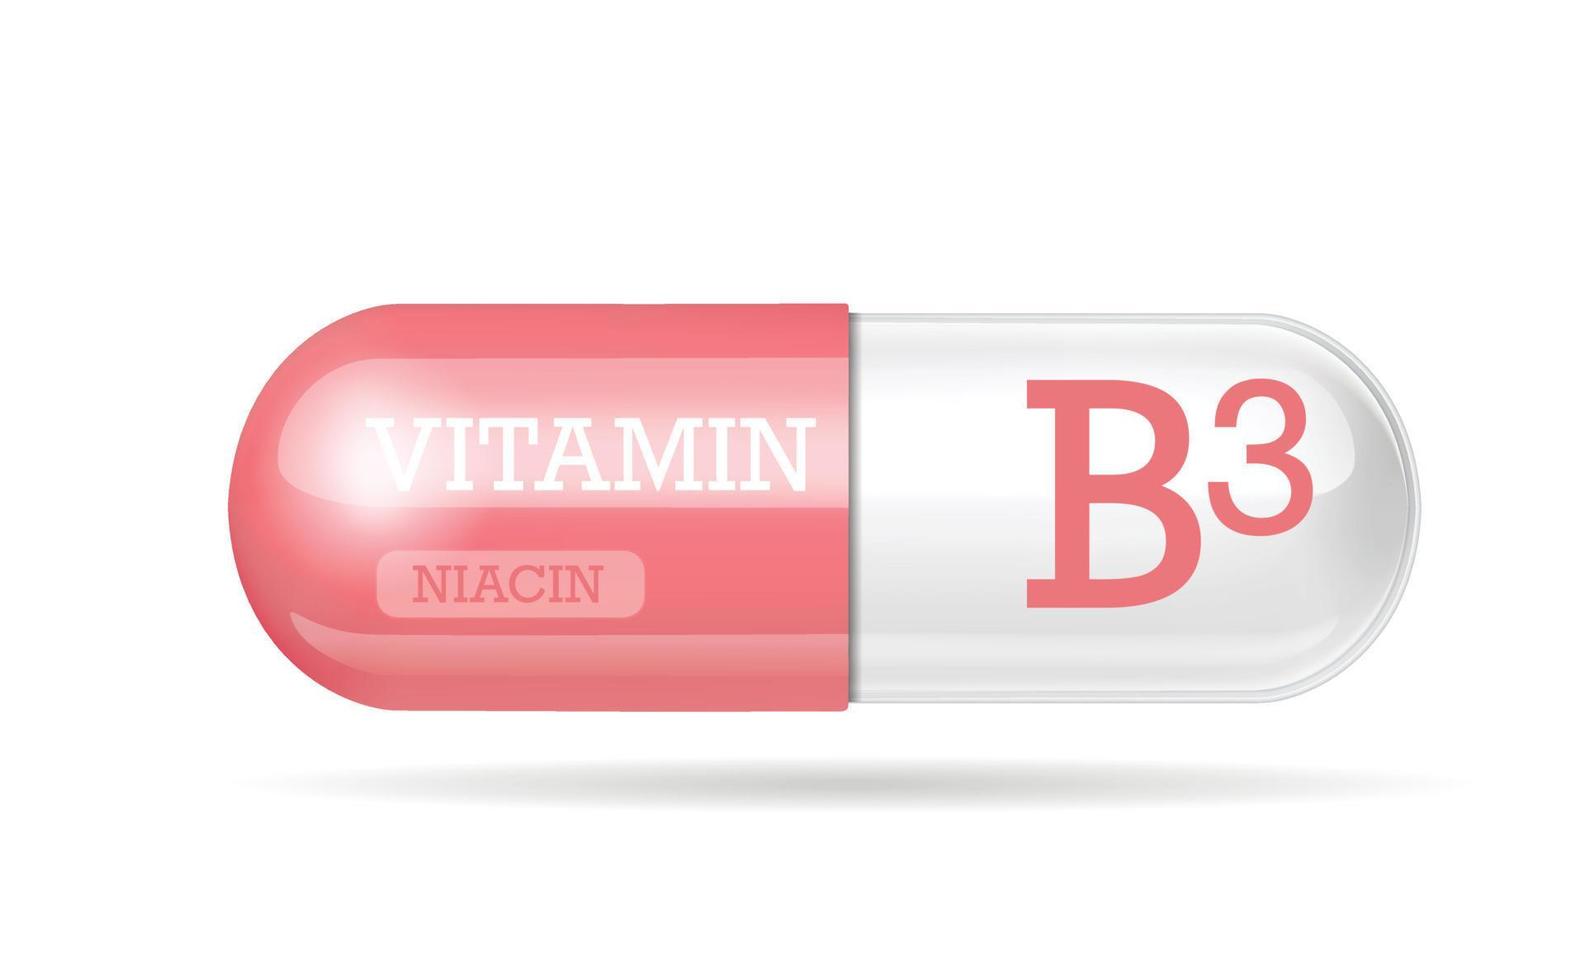 vitamina b3, tableta, cápsula de vitamina. Cápsula de dos tonos de rosa y blanco. copie el espacio ilustración vectorial vector